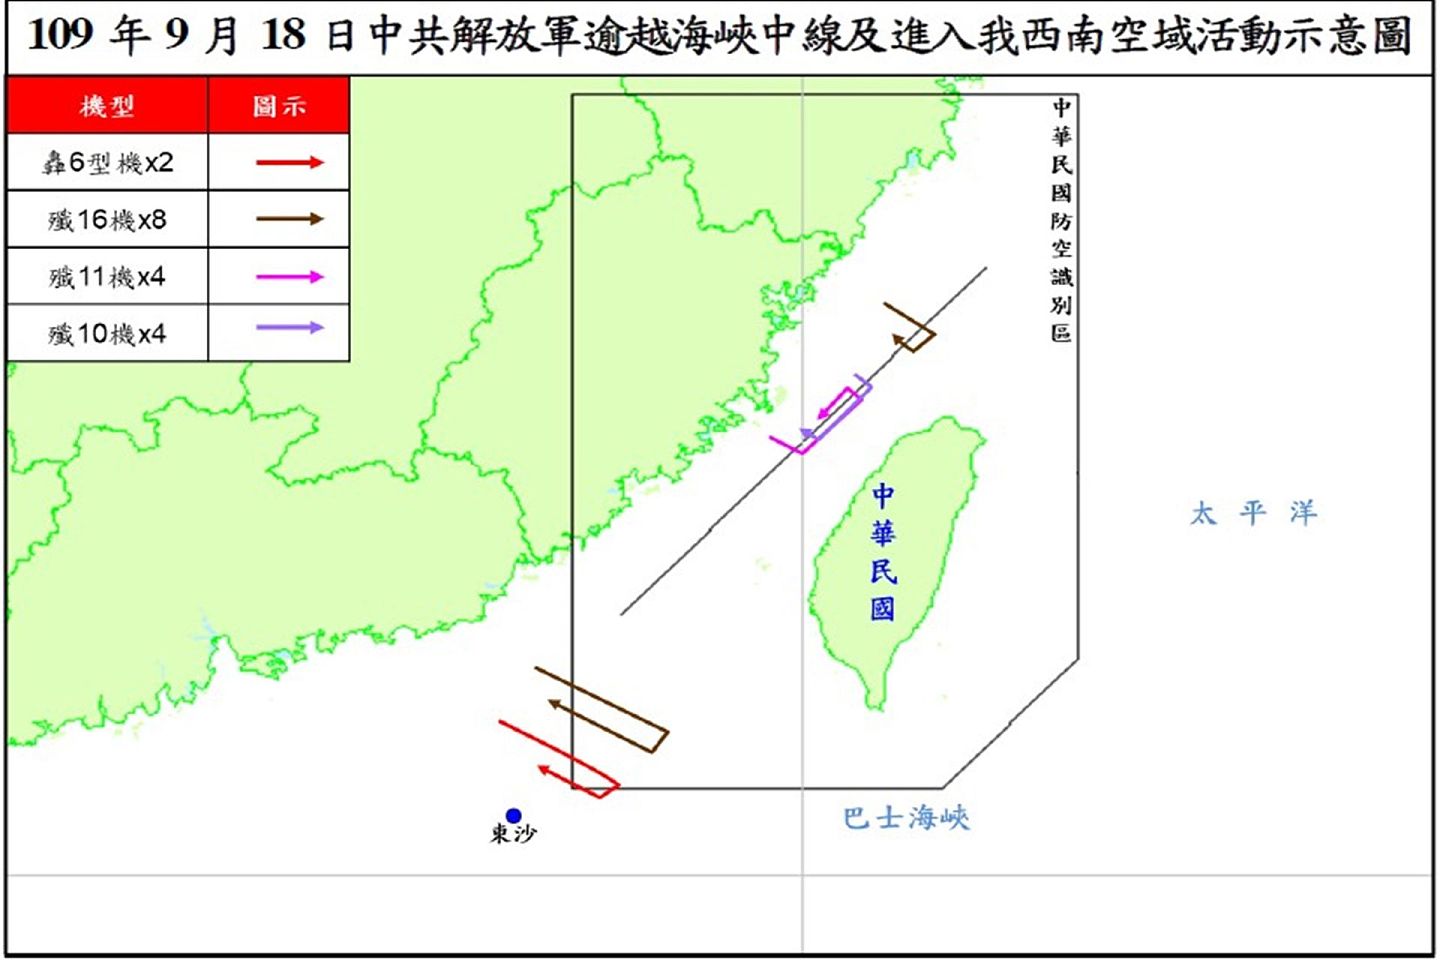 就在海峡论坛召开之际，中国解放军军机连续飞入台湾空域，越过台湾方面认定的“海峡中线”，不过大陆否认所谓“海峡中线”的存在。（台湾国防部）